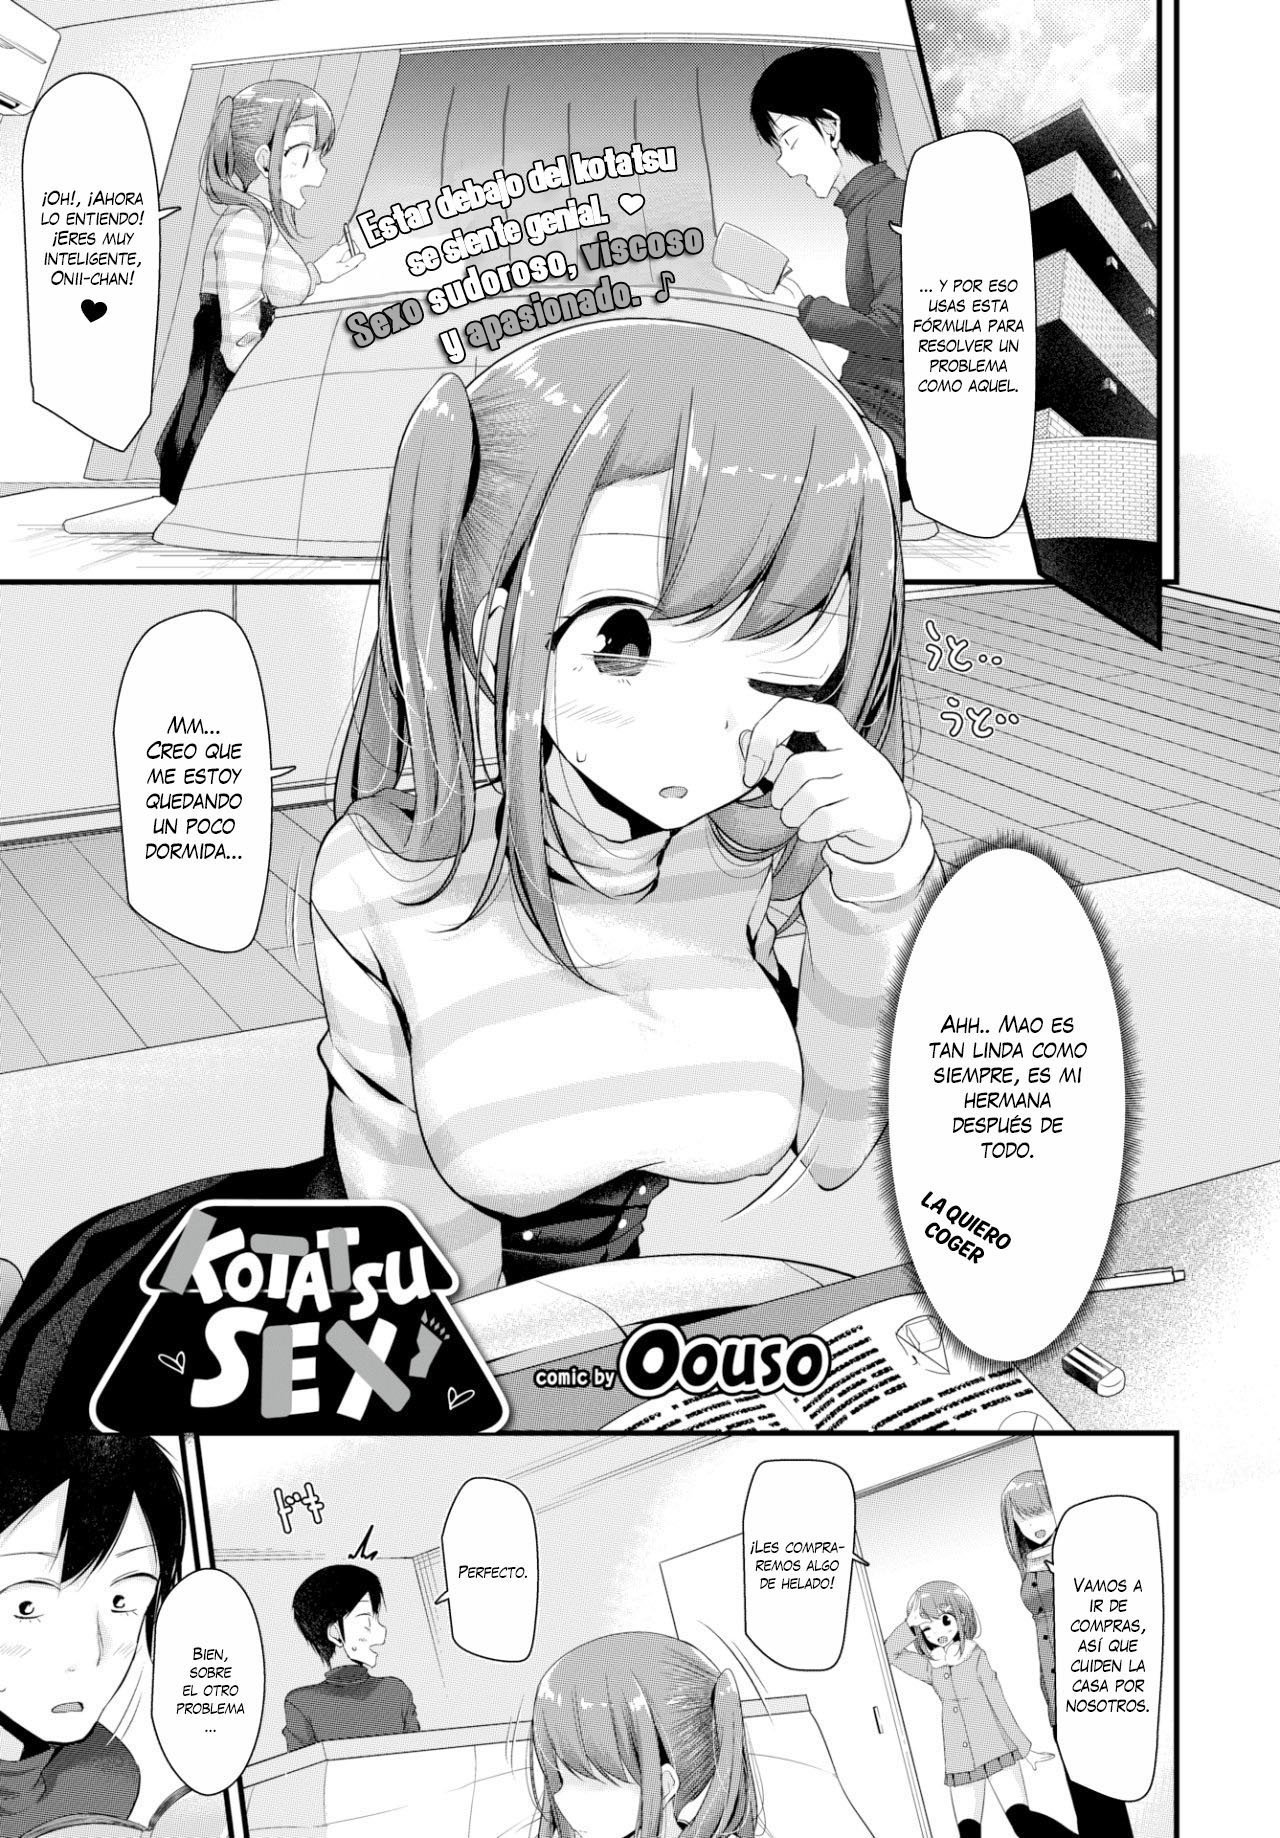 Sexo en el Kotatsu - 1